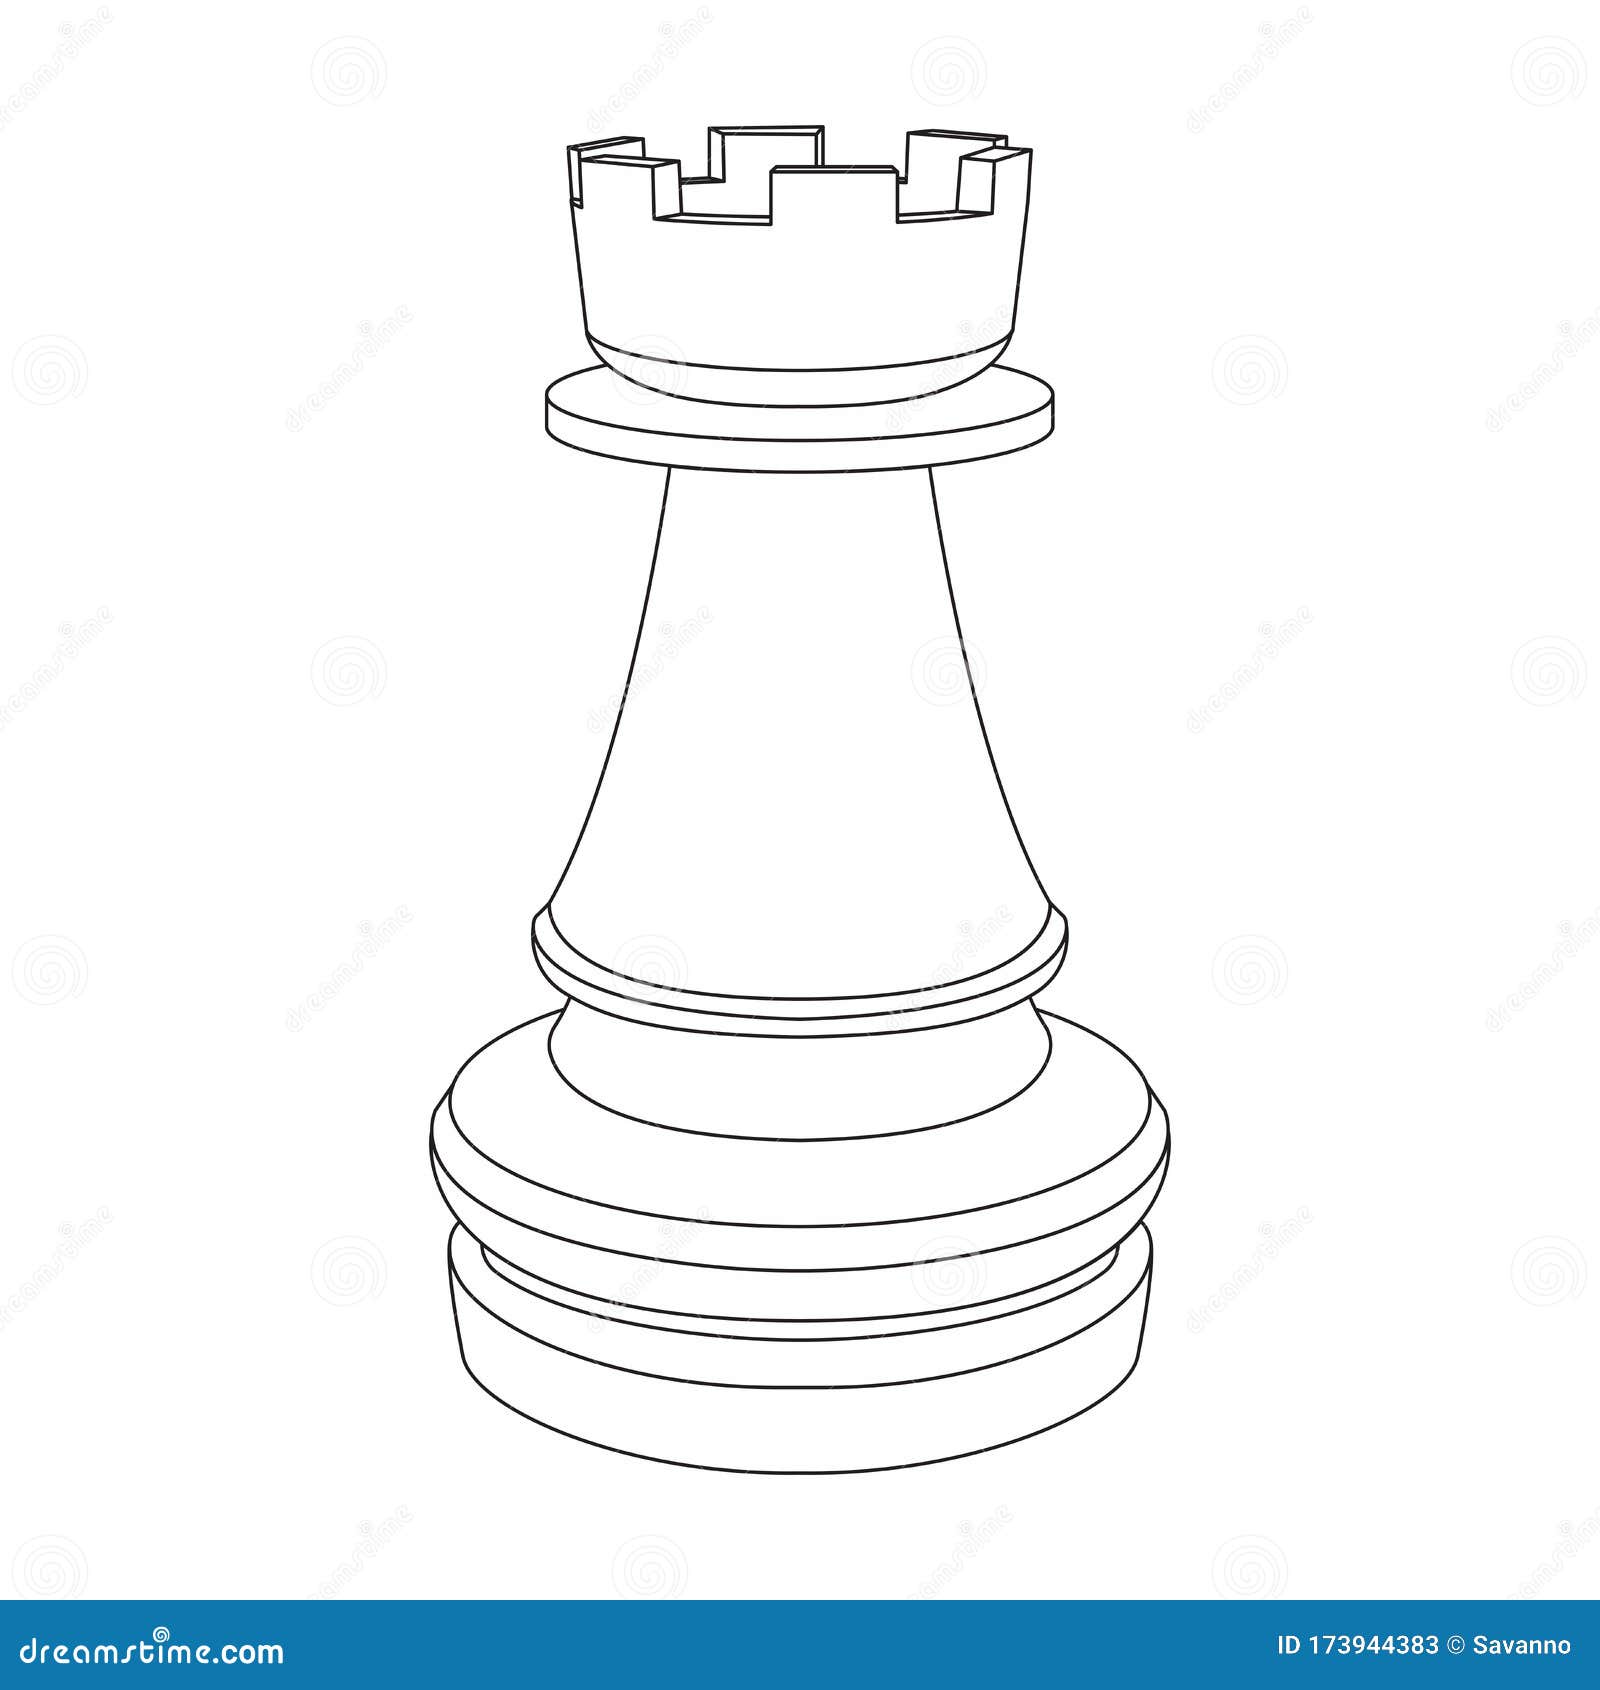 Torres de Loulé: xadrez em movimento  Знаки, Графика, Векторная графика